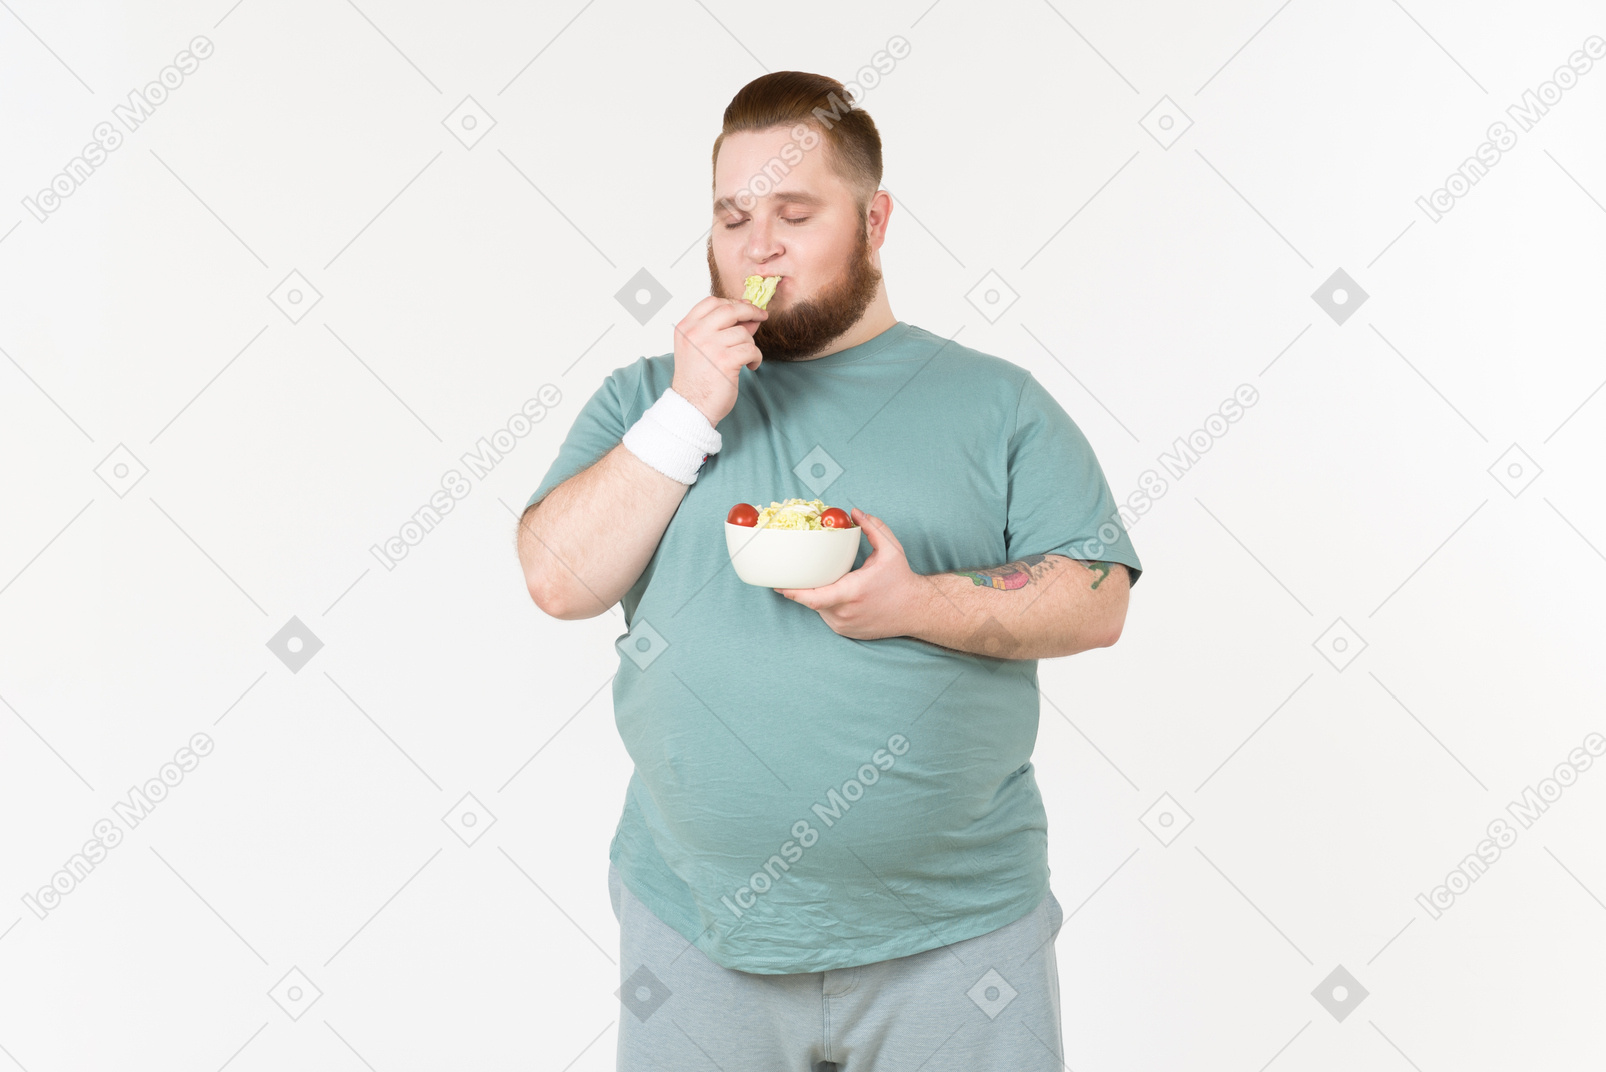 그는 접시에서 고른 샐러드 잎을 먹고 운동복에 큰 사람